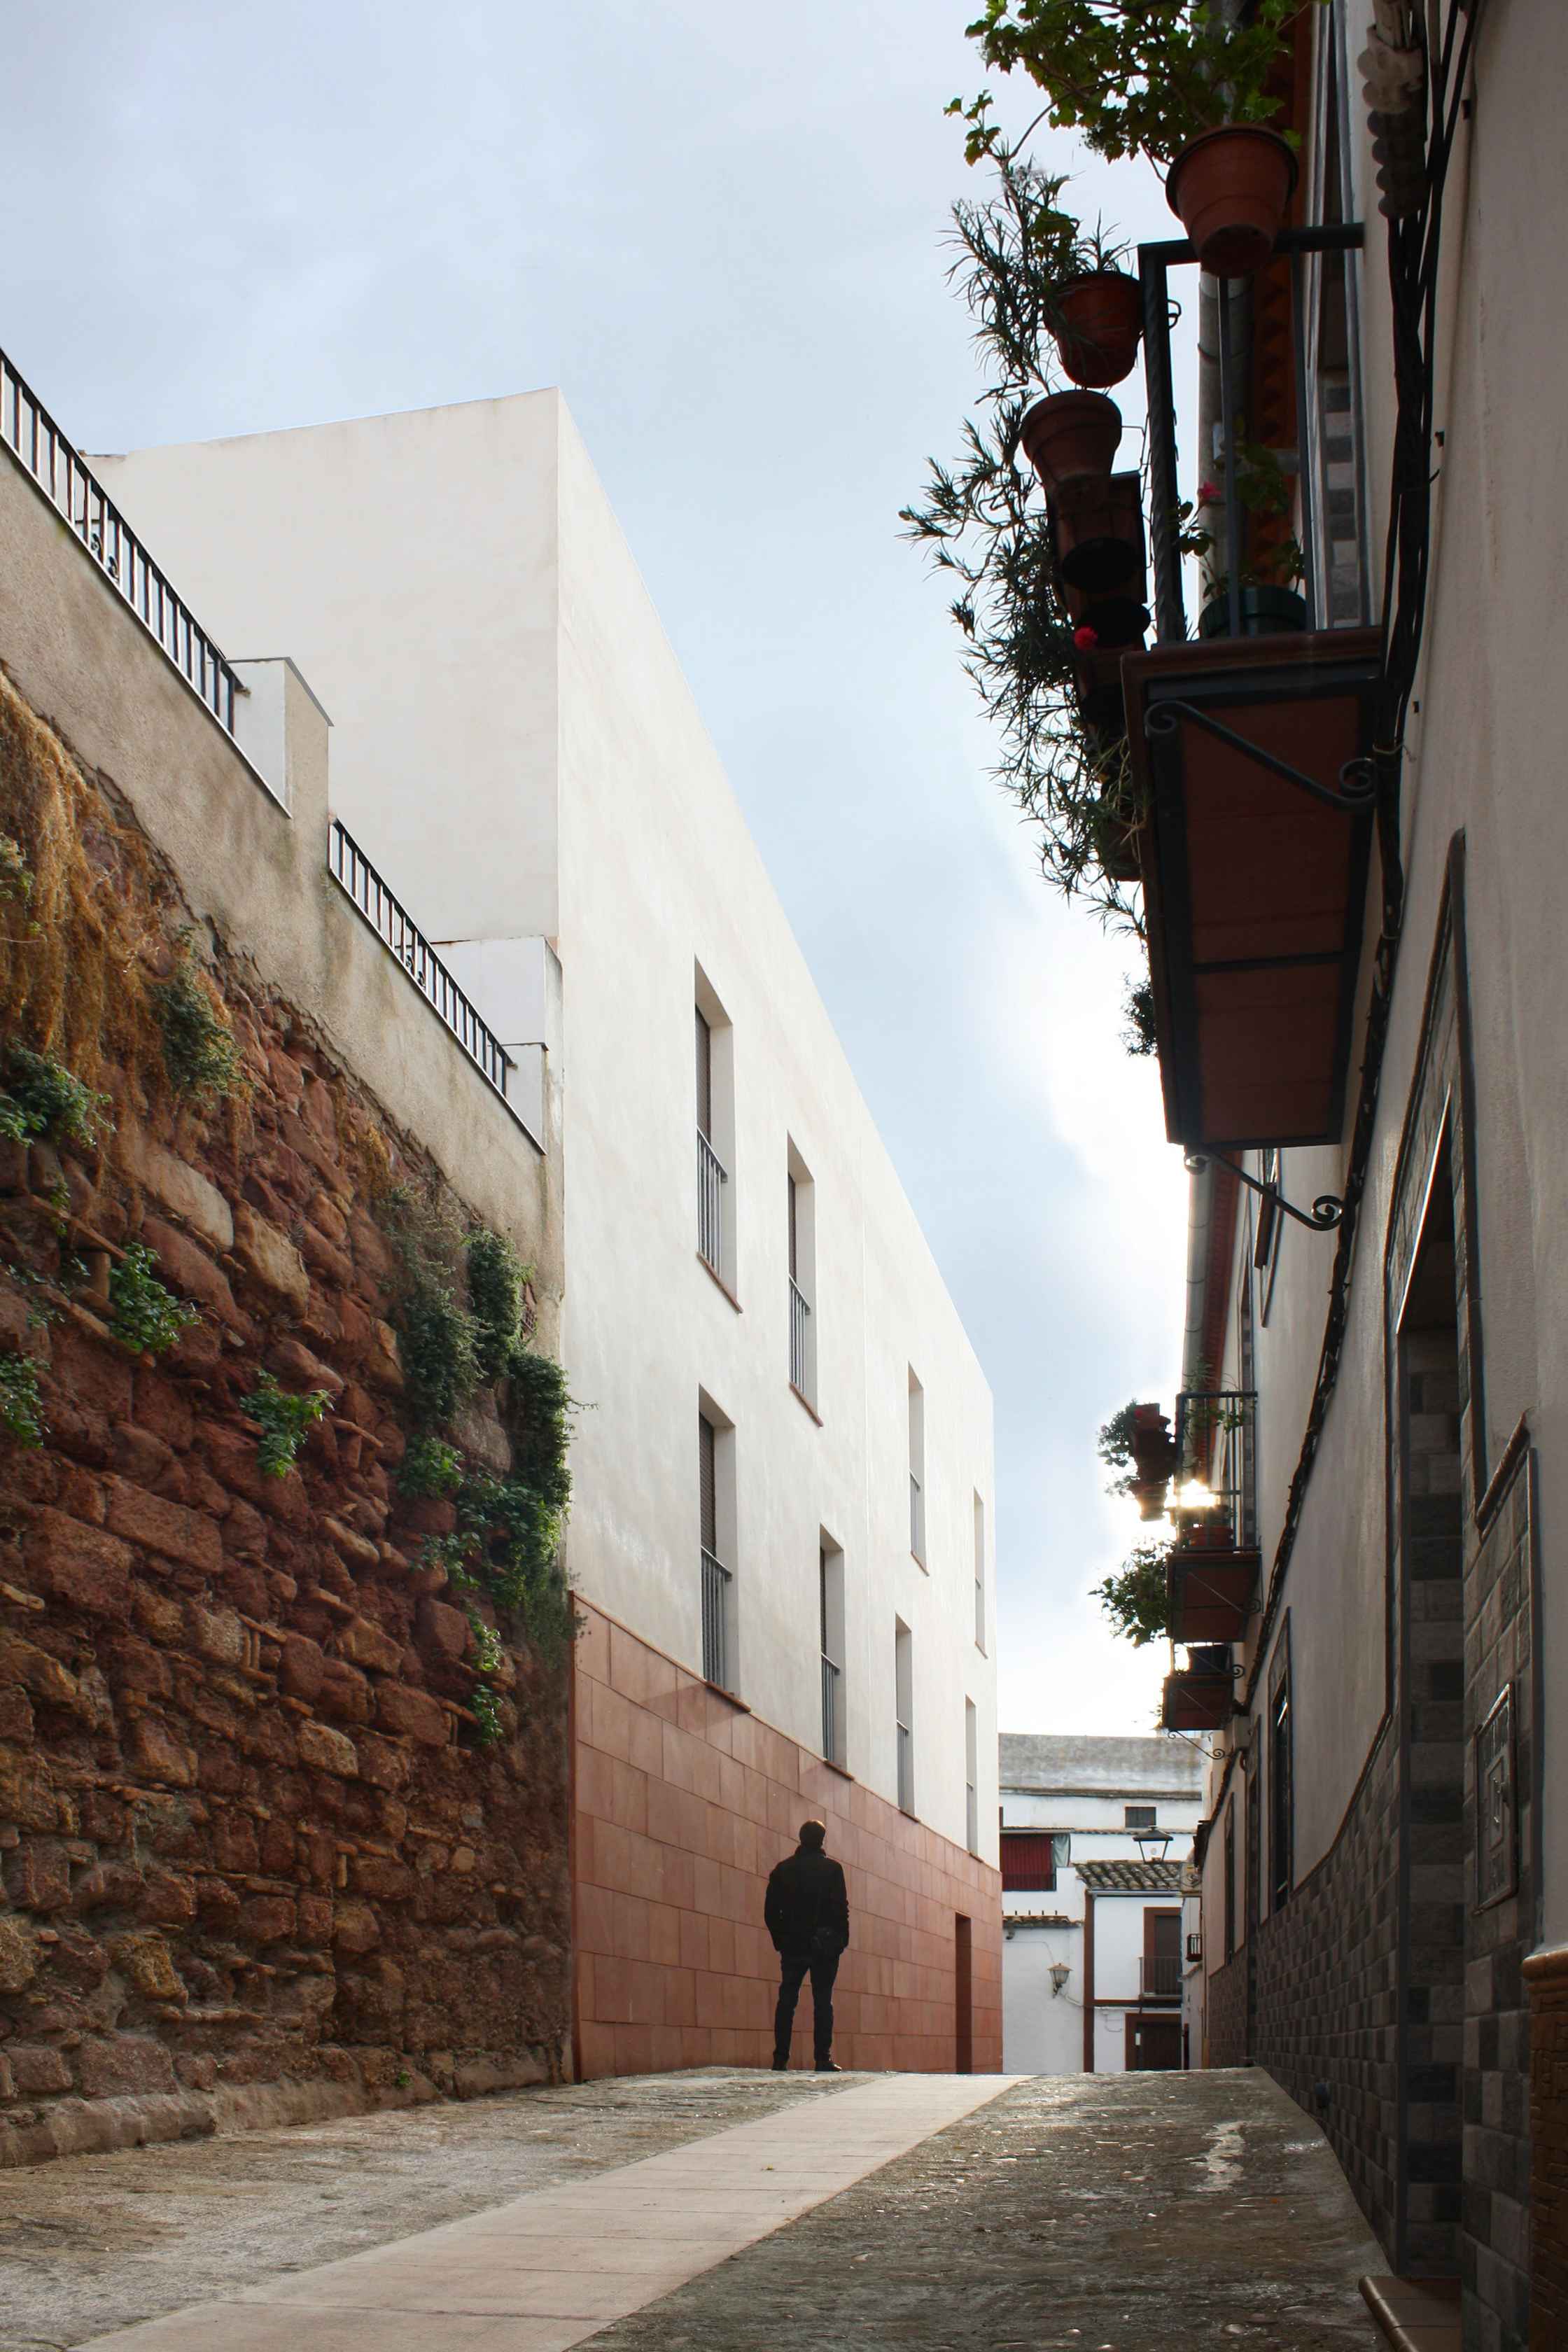 Promoción de viviendas en Montoro (Córdoba) con rehabilitación de Casa Palacio del S. XVIII y obra de nueva planta. Arquitectura contemporánea e histórica en un único proyecto de LAP arquitectos.